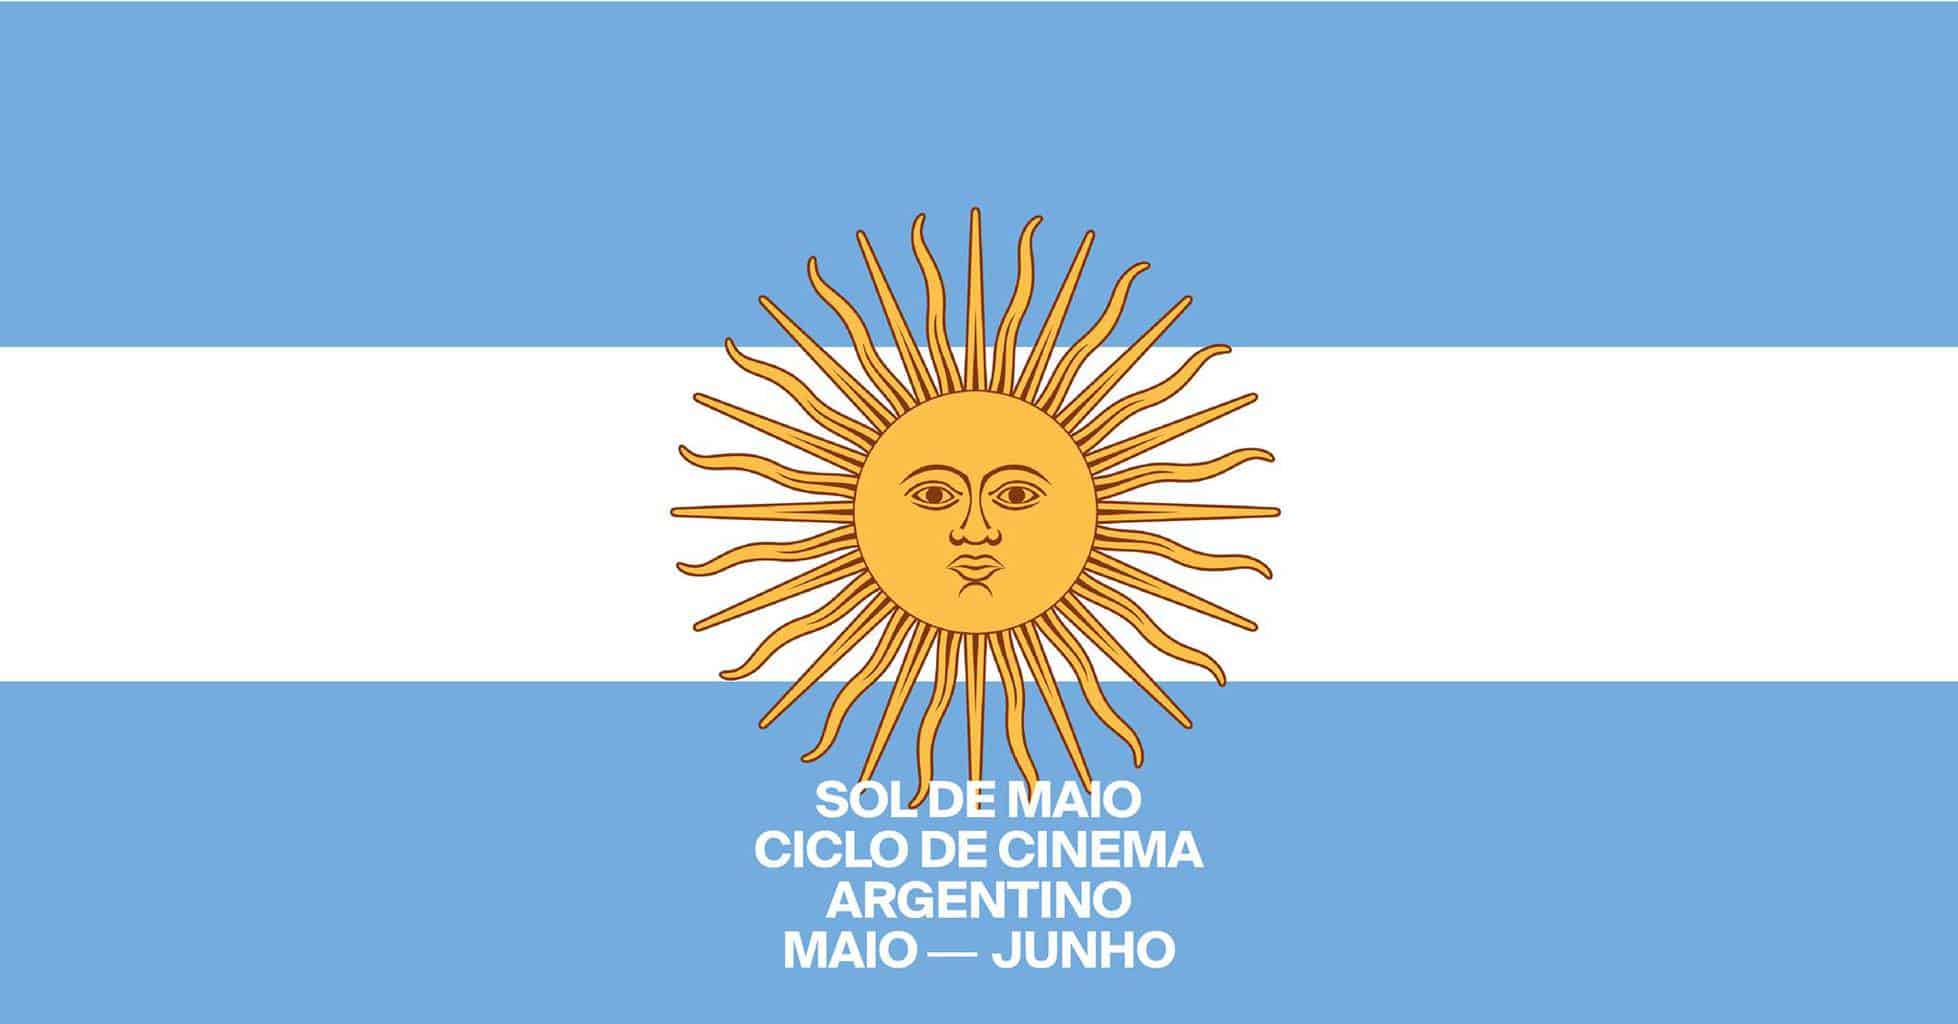 SOL DE MAIO - Ciclo de Cinema Argentino Artes & contextos cinemaargentino